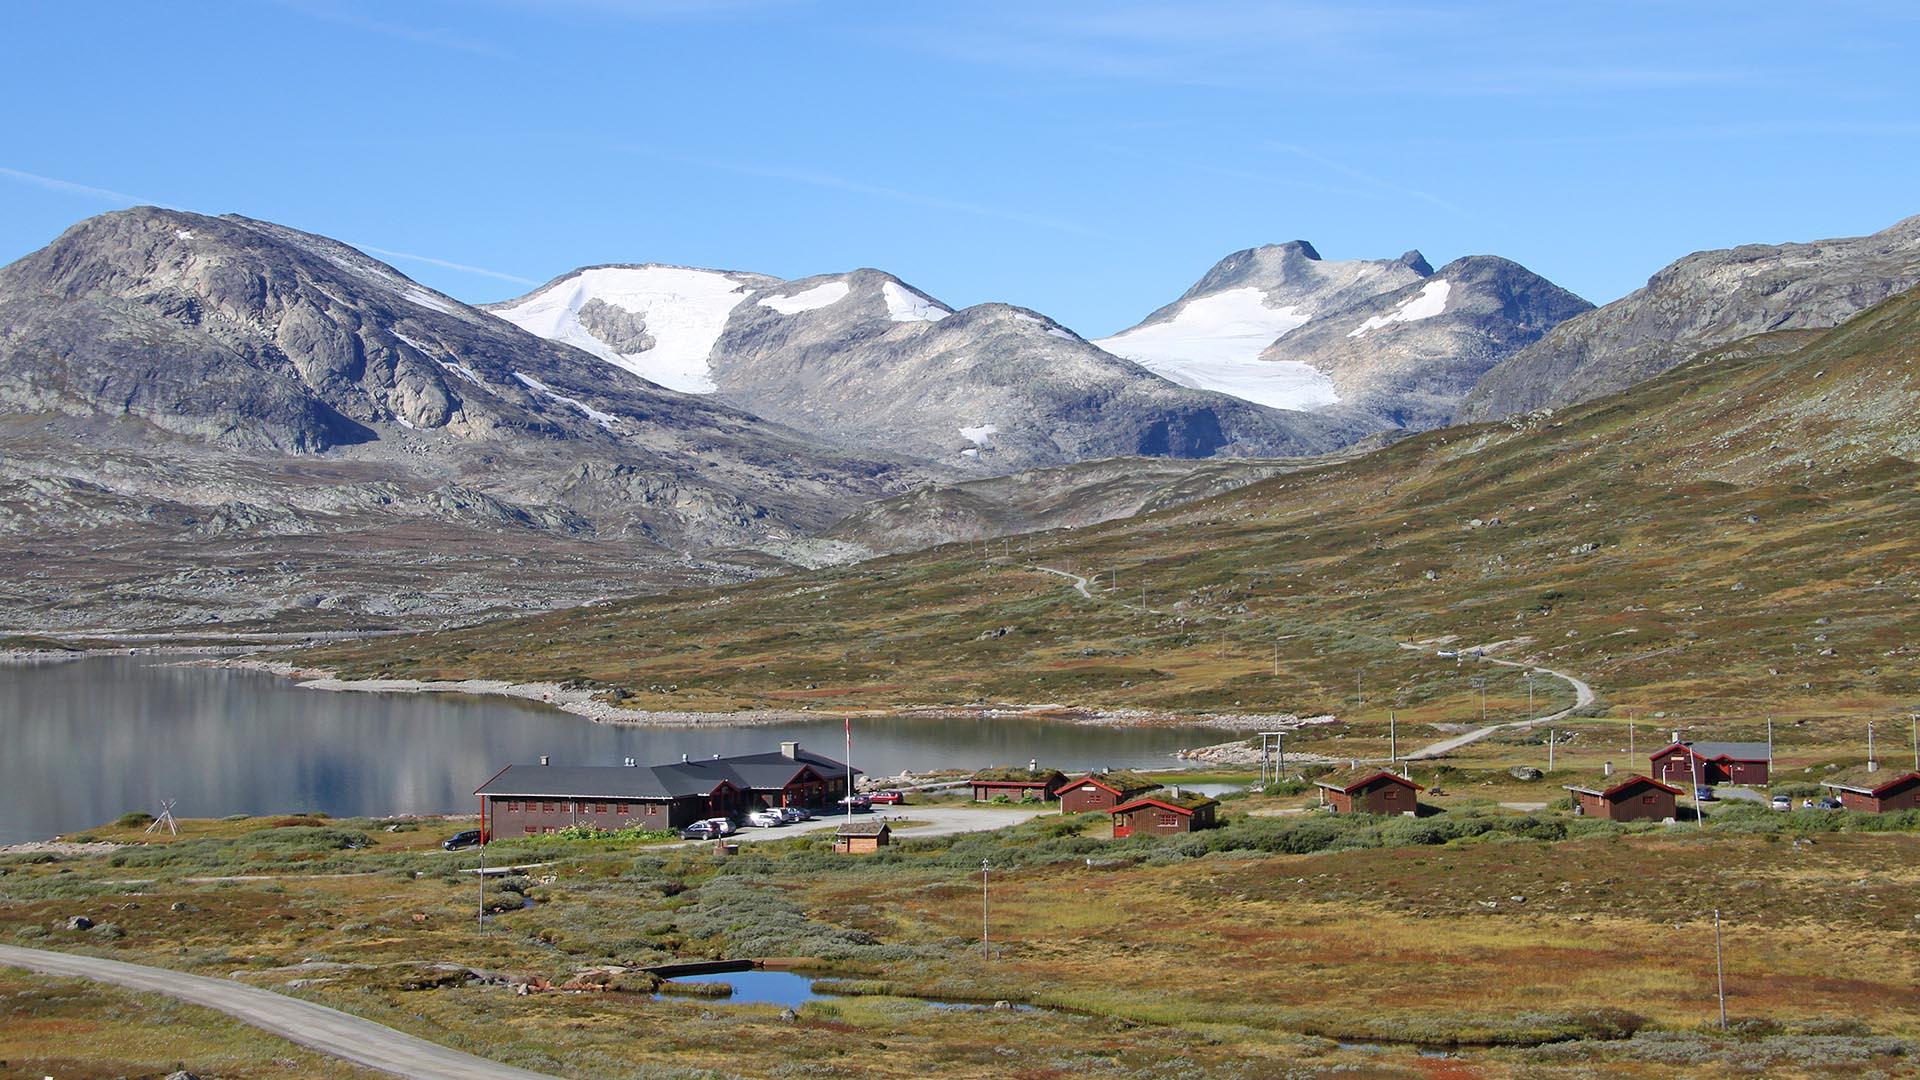 Eine Lodge und Hütten liegen am Ufer eines Bergsees in offener Fjellandschaft mit hohen, schneebedeckten Bergen im Hintergrund